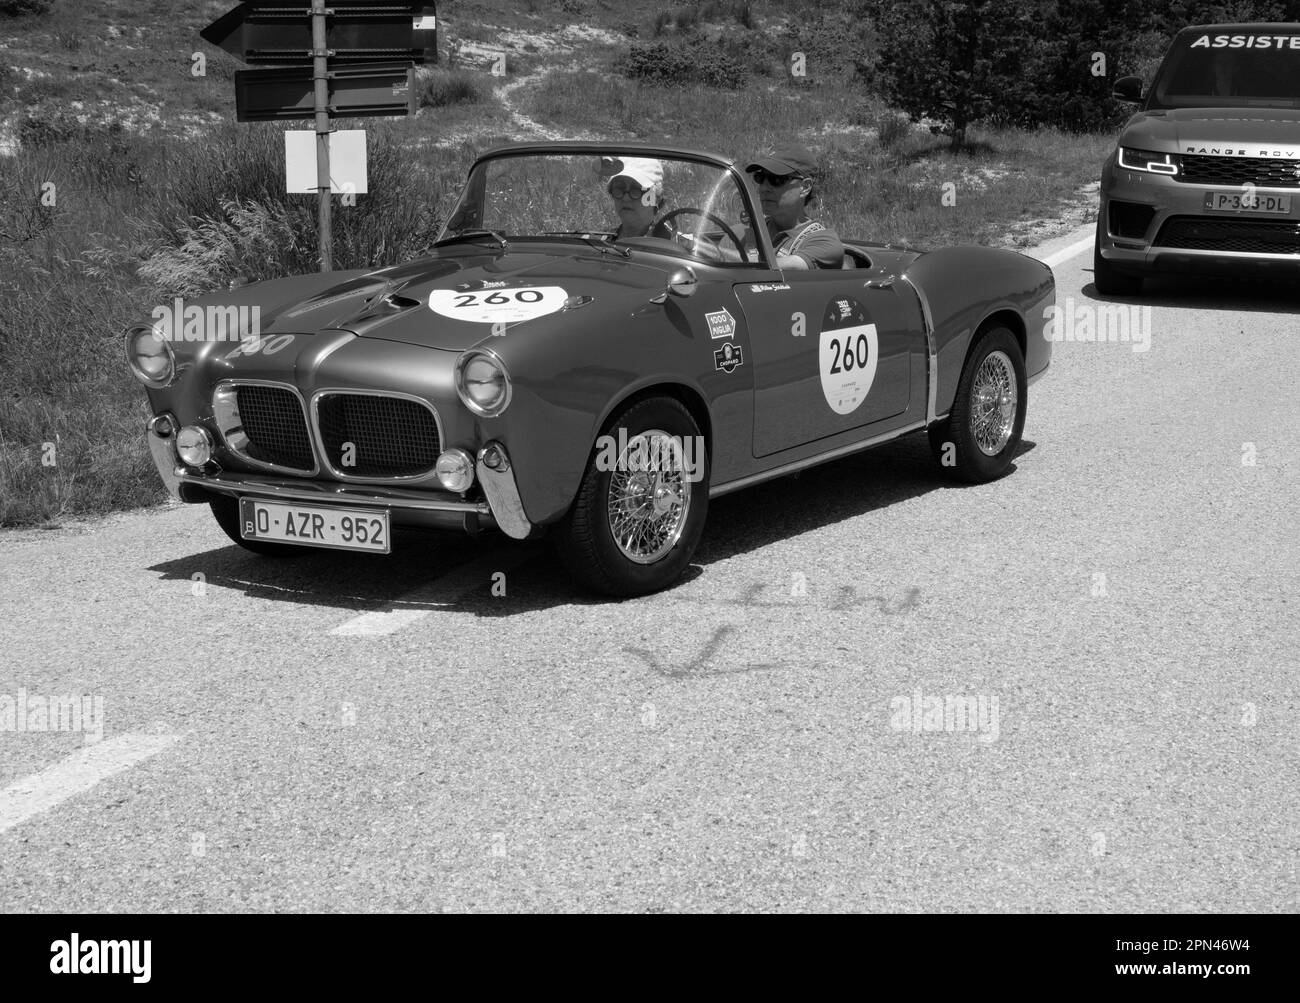 URBINO, ITALIE - 16 JUIN - 2022 : FIAT 1100 103 TV SPIDER 1955 sur une vieille voiture de course en rallye mille Miglia 2022 la célèbre course historique italienne Banque D'Images